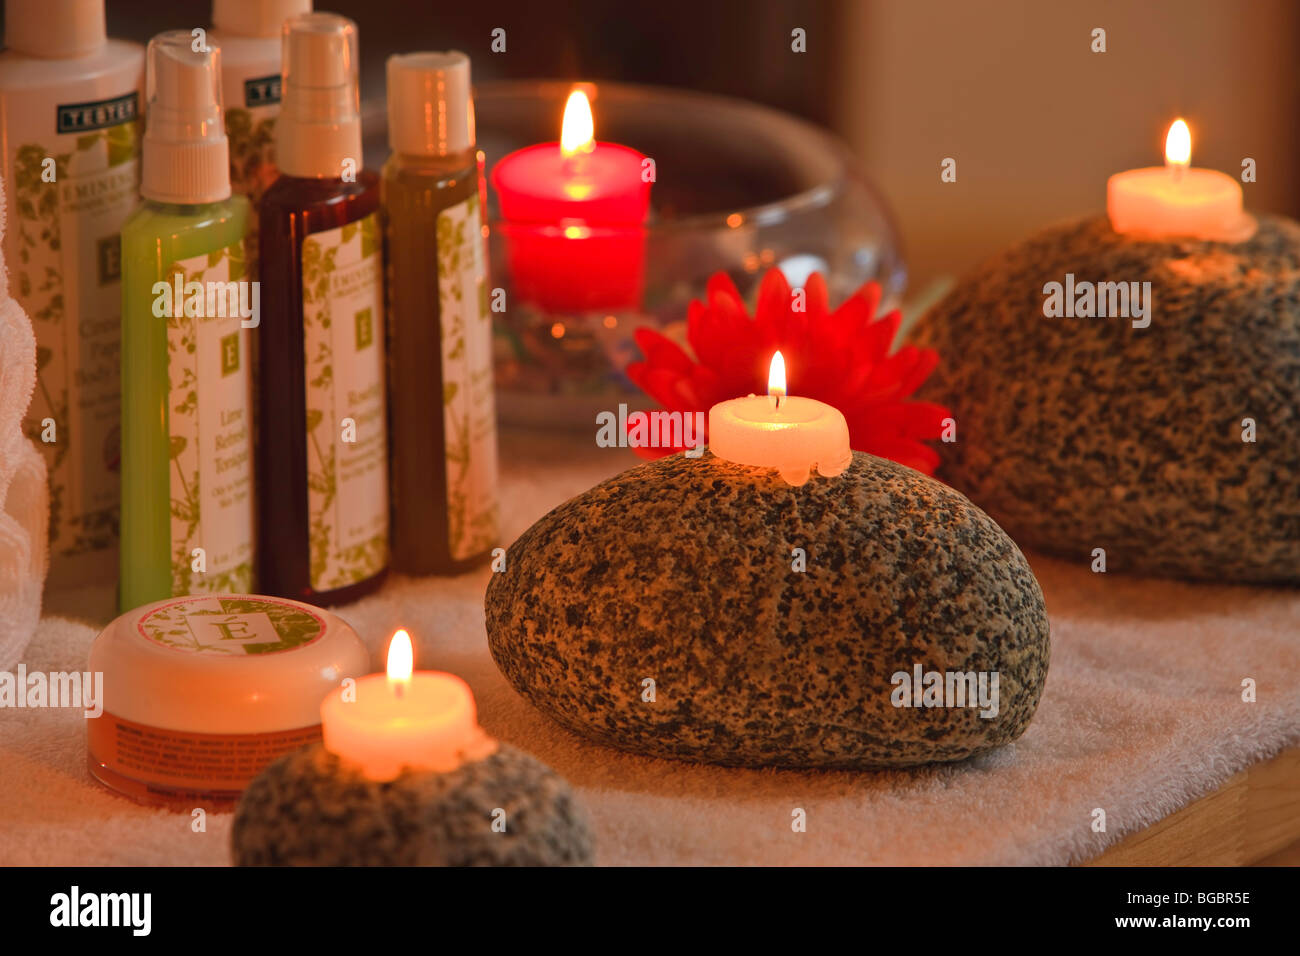 Weißes Teelicht Kerzen auf großen Westküste Felsen und eine rote Kerze in eine Glasschüssel mit Flaschen von Beauty-Produkten. Stockfoto